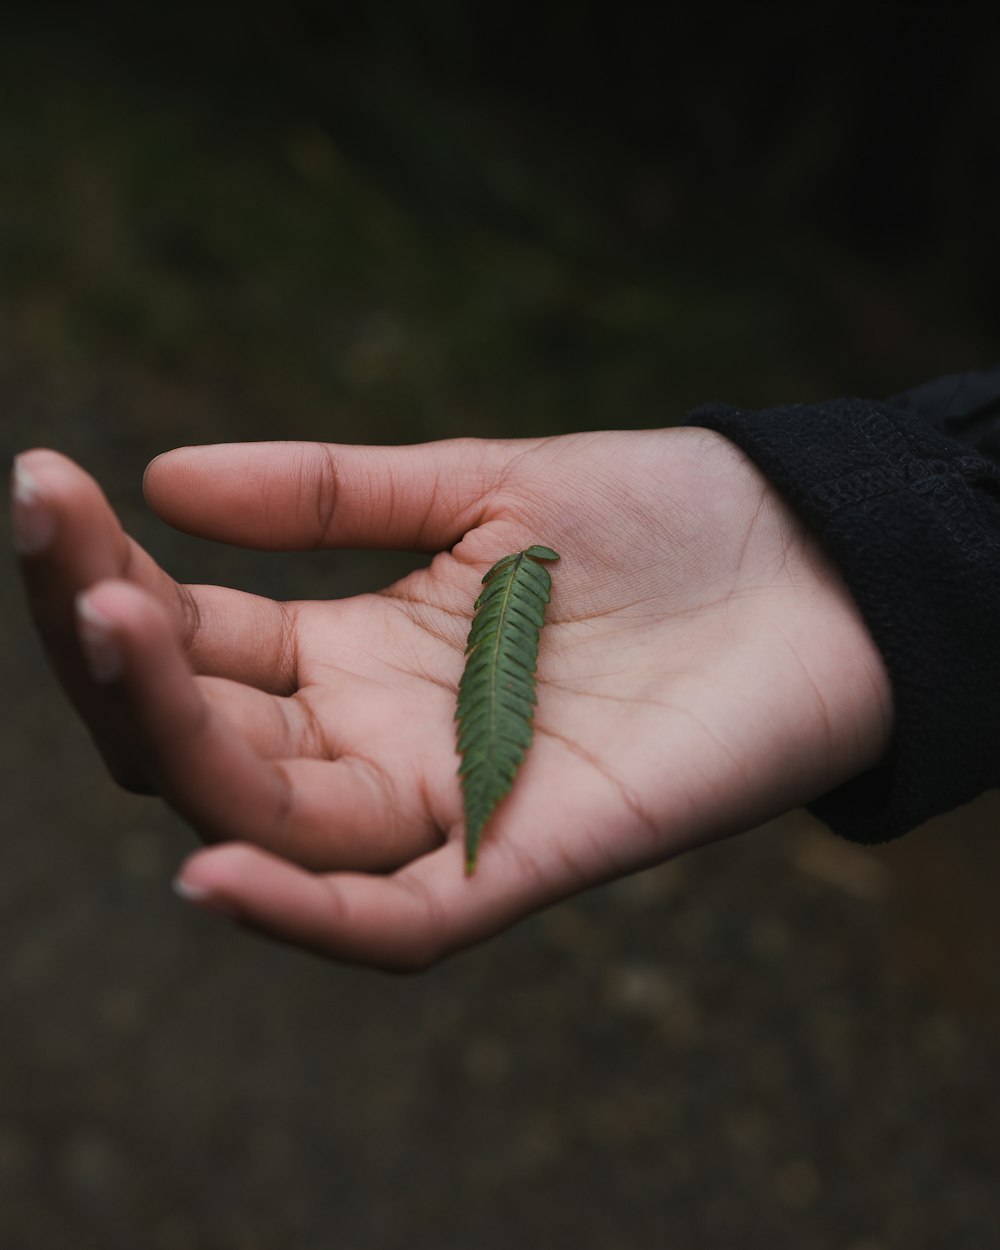 lagarta verde na mão das pessoas